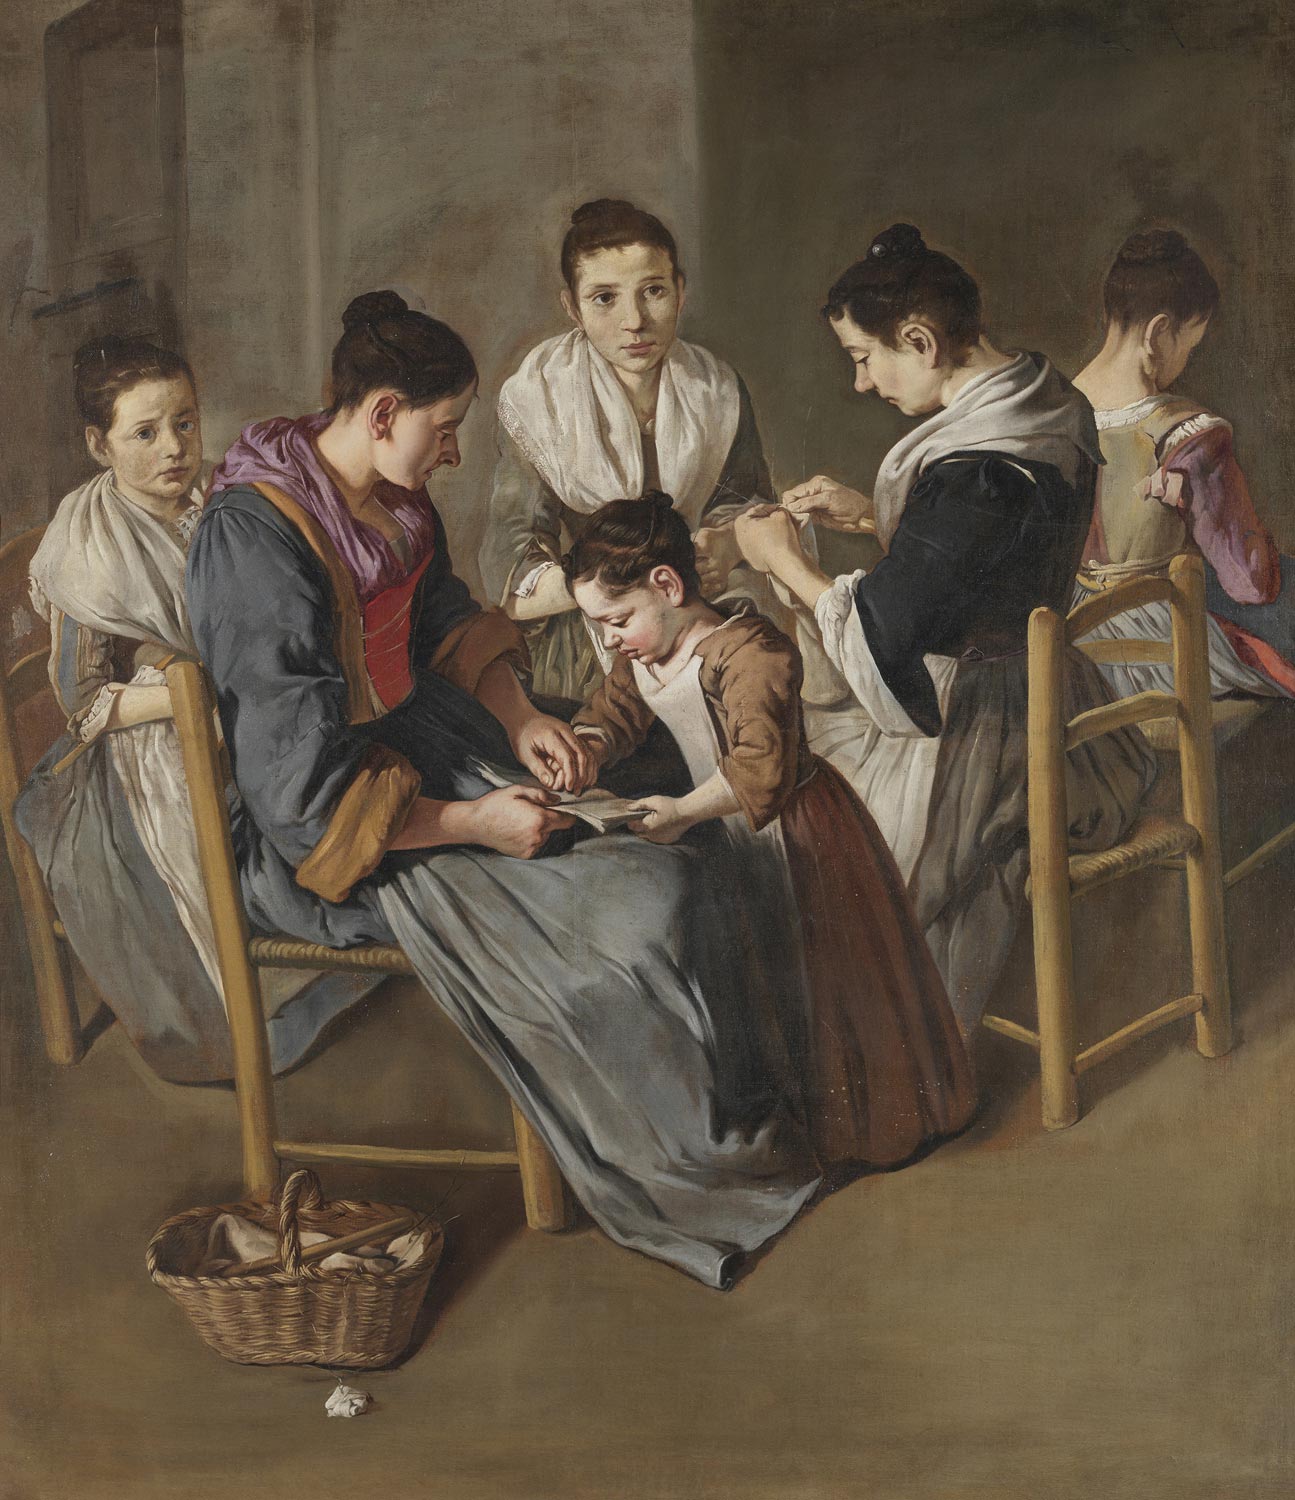 Giacomo Ceruti, Scuola di cucito (1720-1725 circa; olio su tela, 194 × 170,5 cm; Brescia, Pinacoteca Tosio Martinengo, inv. DI 1773)